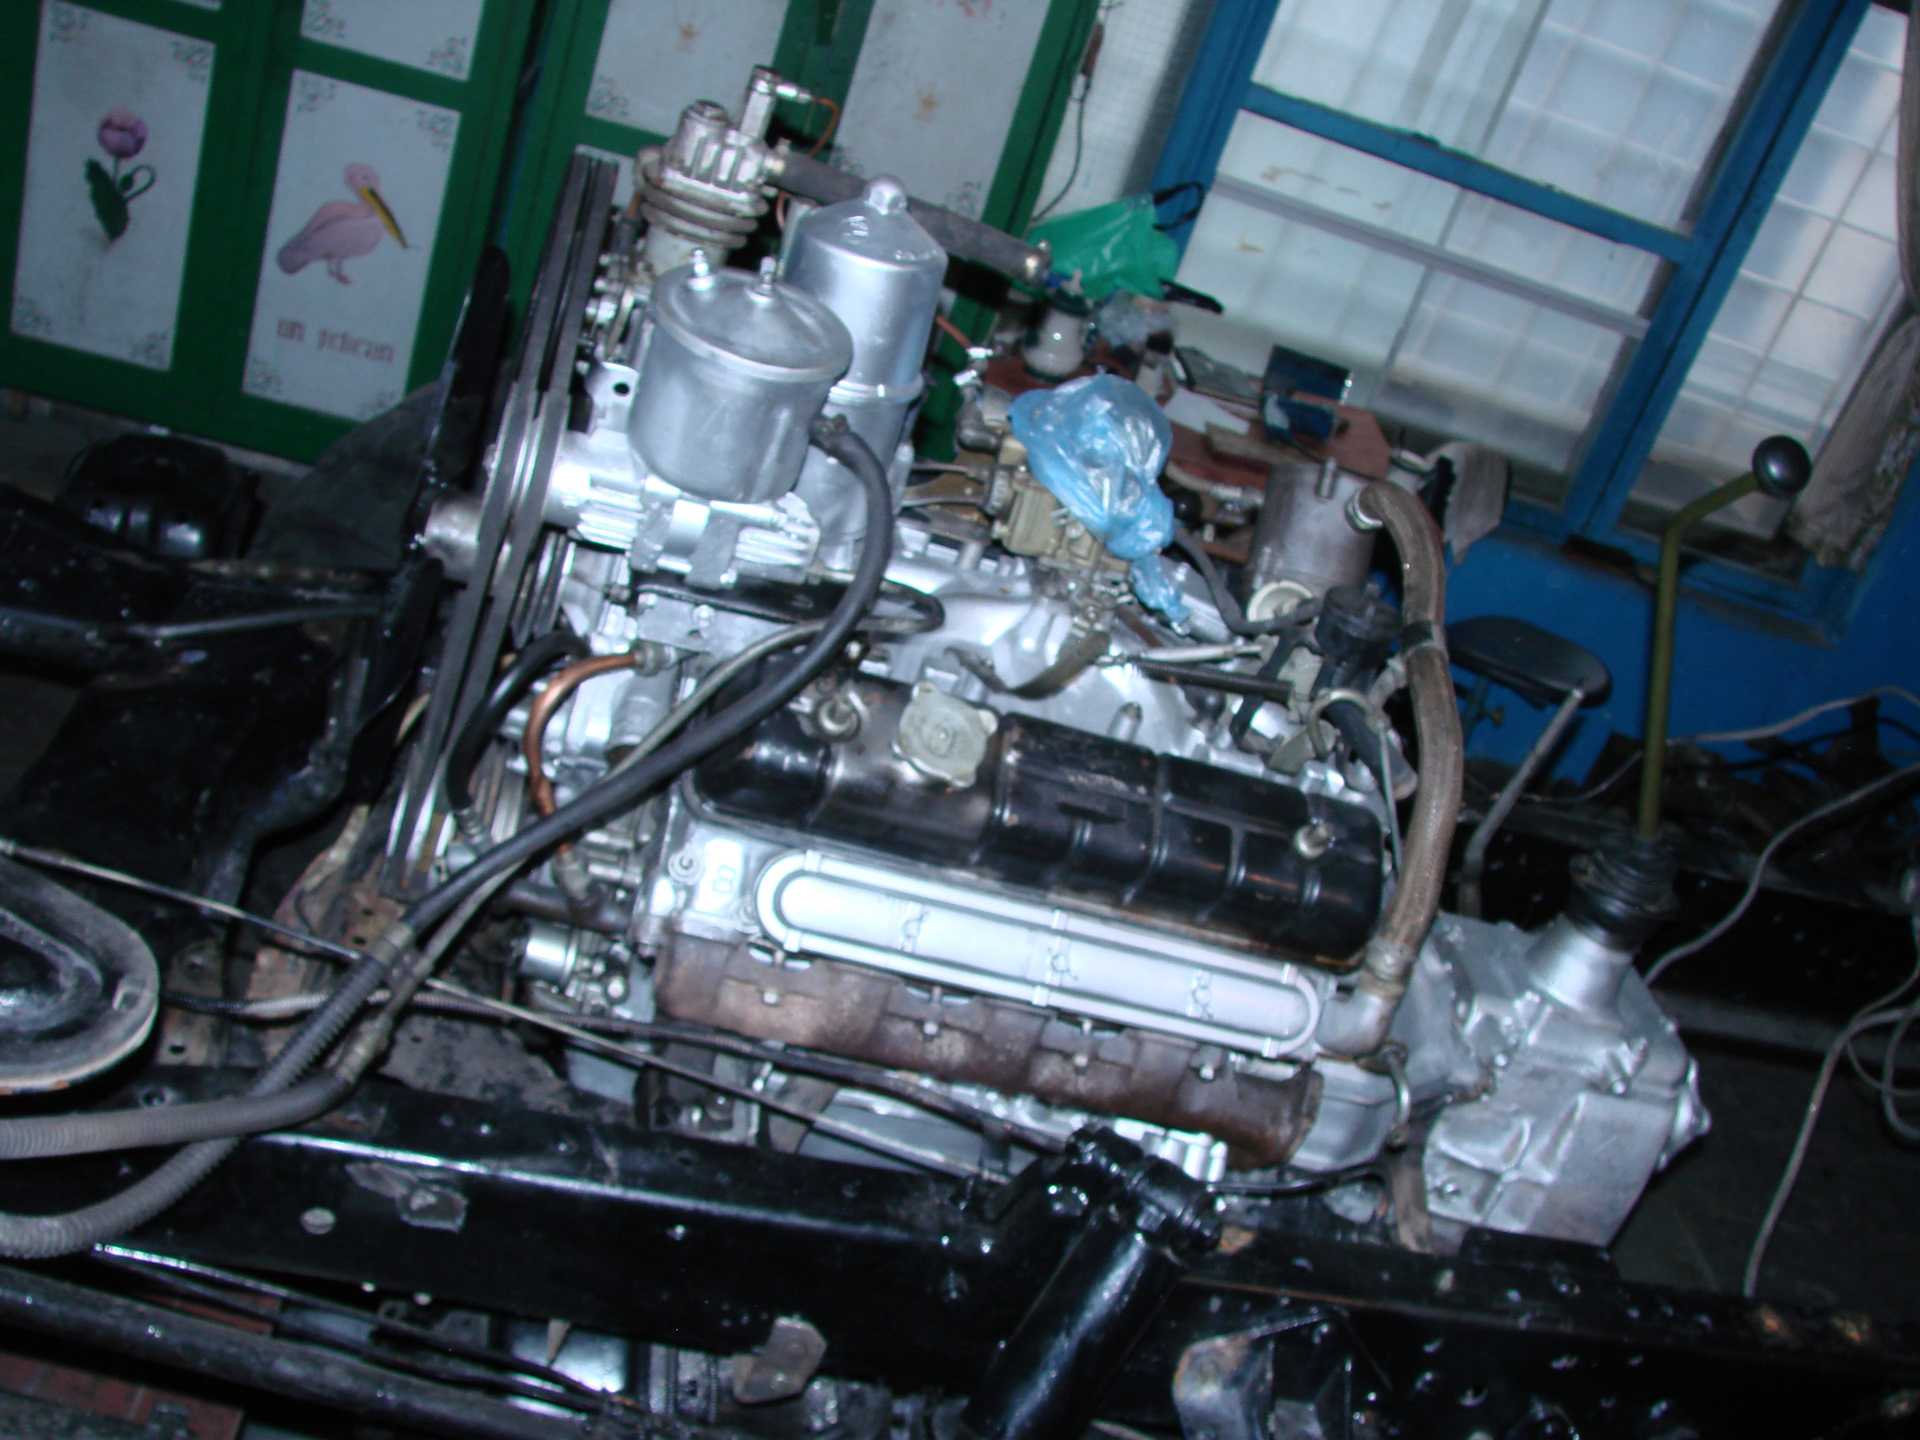 Газ-53 модификации и их технические характеристики, устройство двигателя, электрики и всех систем, особенности эксплуатации